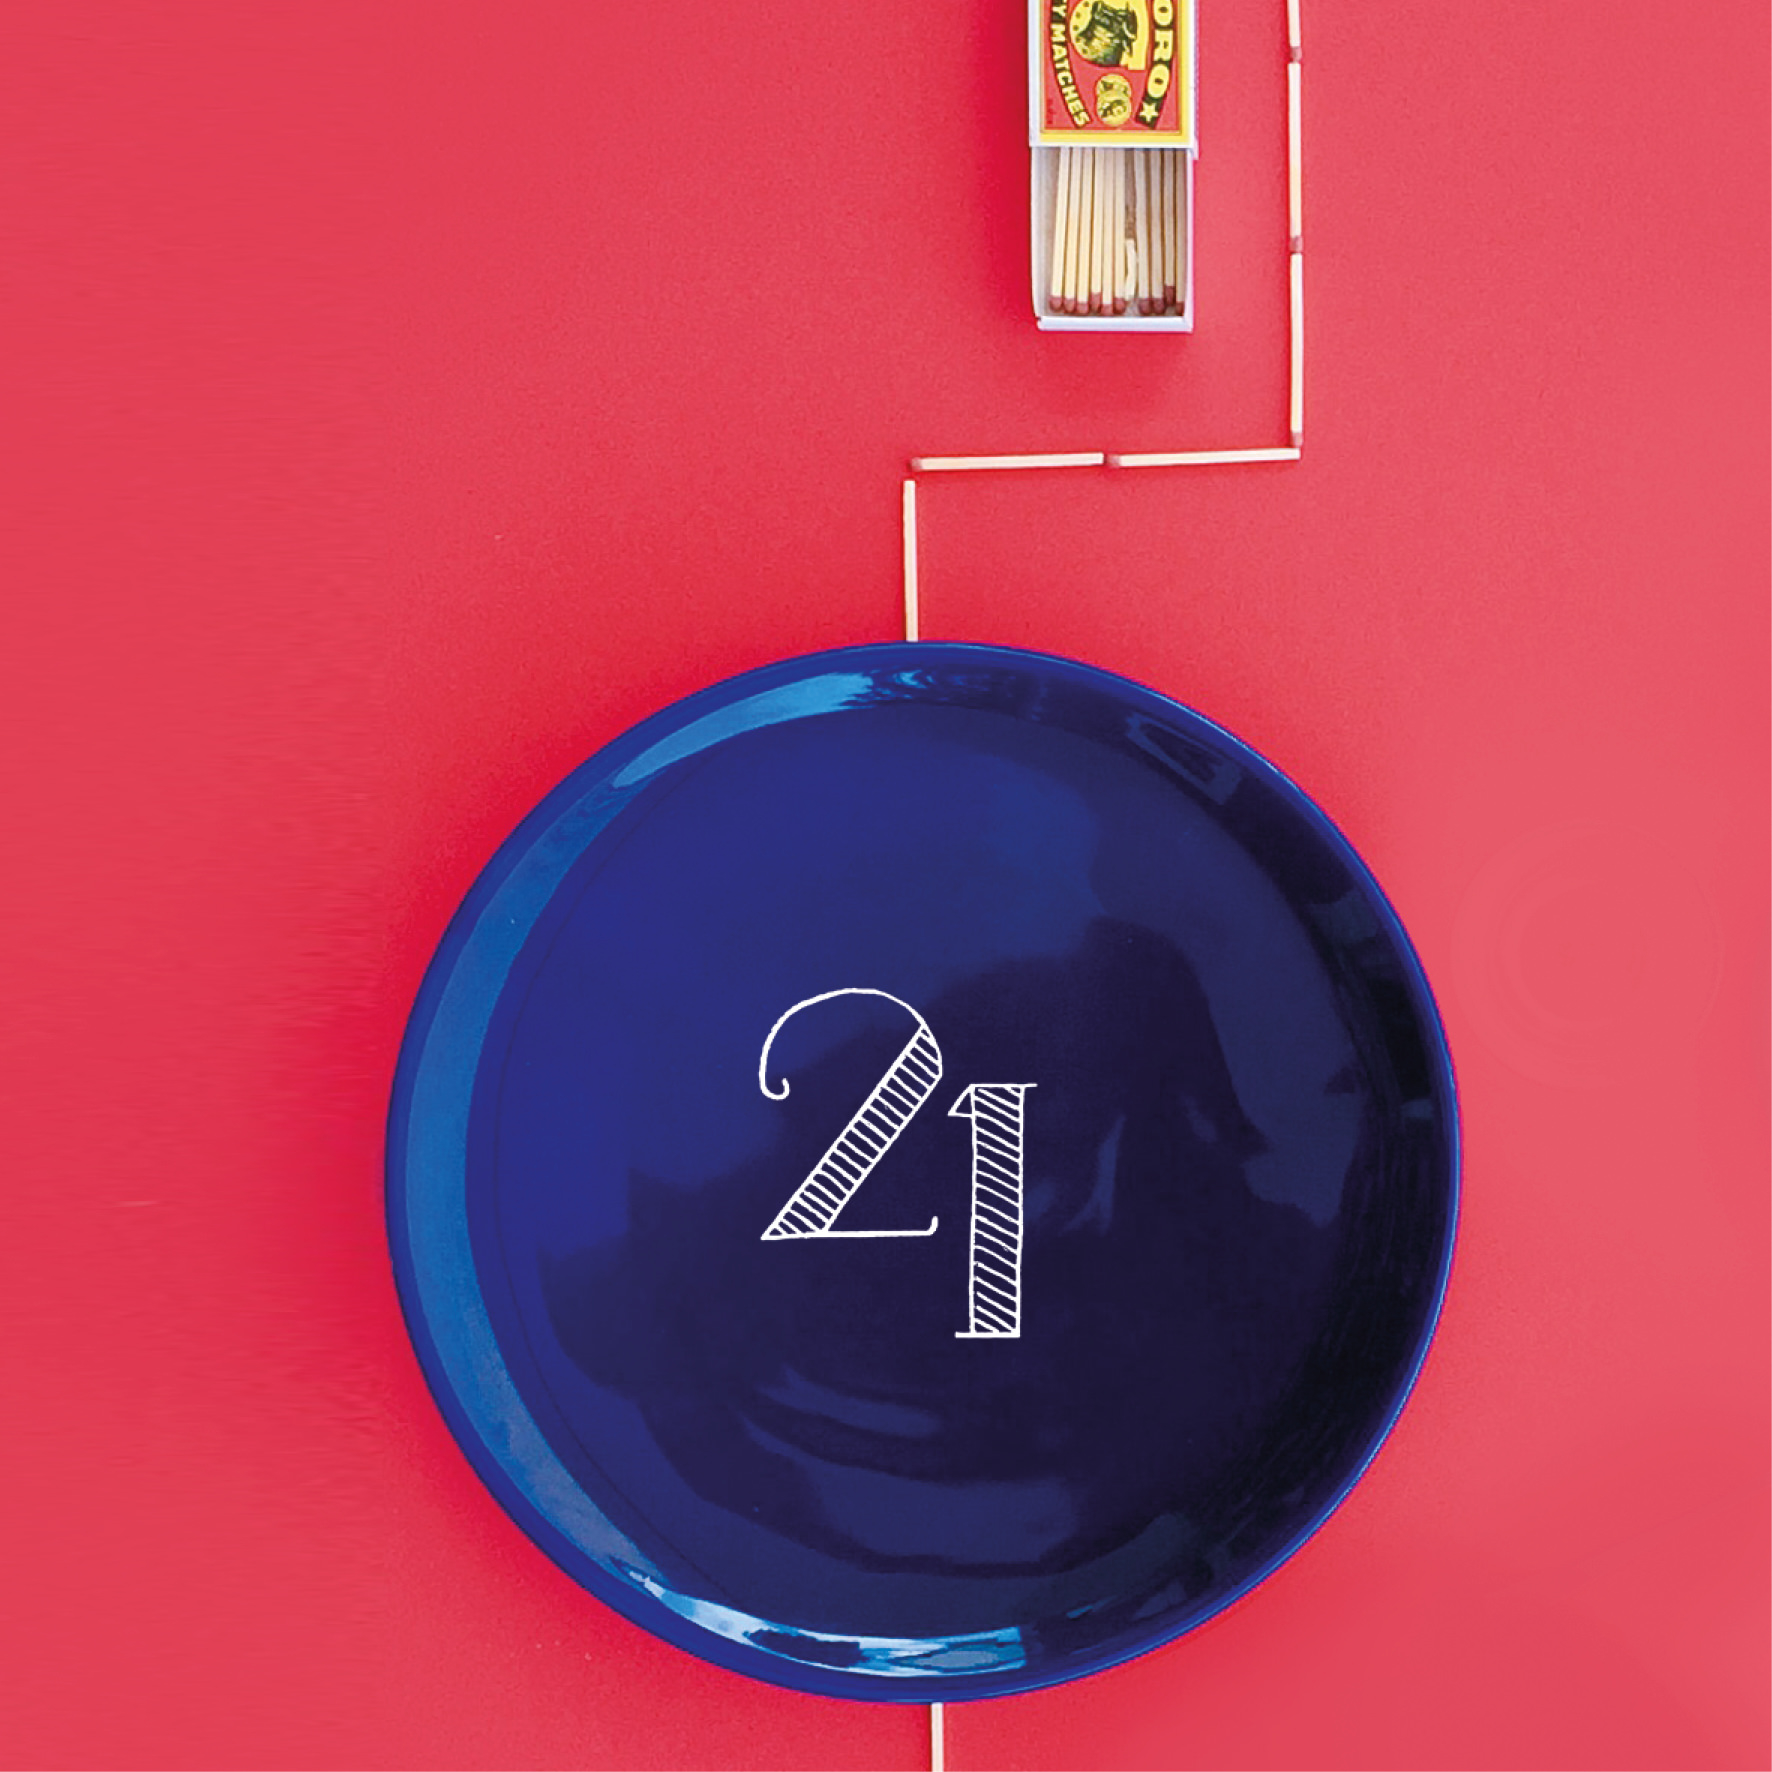 Visuel de 2021 - MONTHLY PLATES Assiette peinte à la main, 27 cm, série limitée à 100 exemplaires numérotés